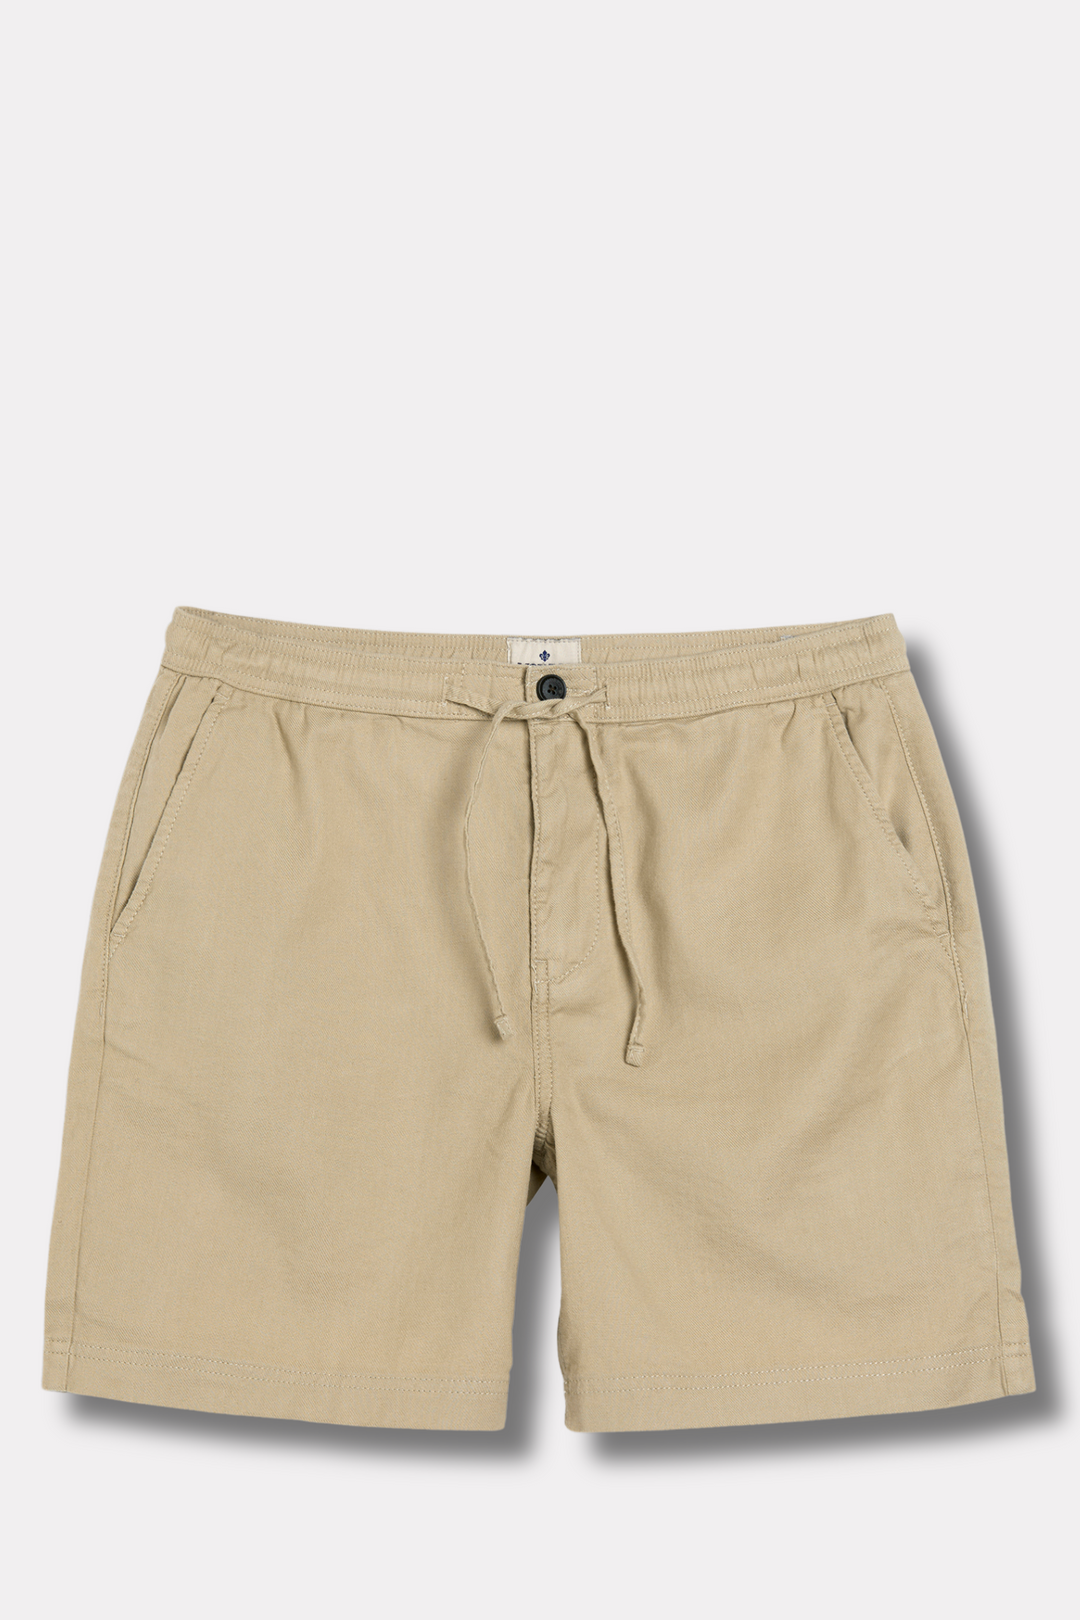 Fenix Cotton/Linen Shorts Khaki